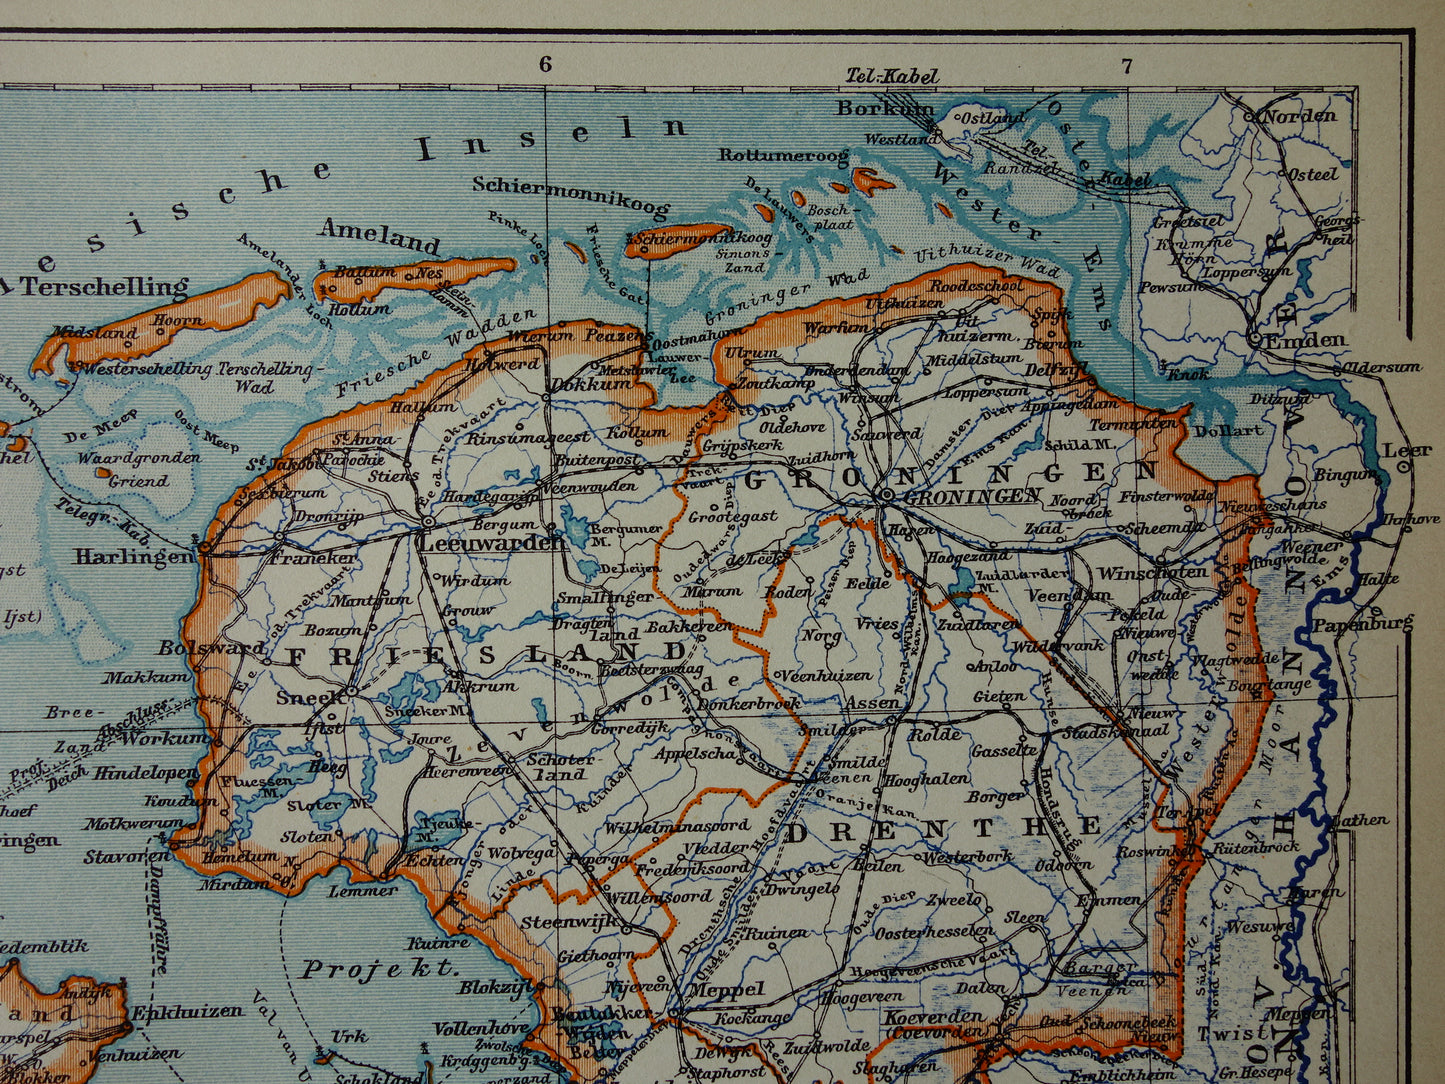 Oude kaart van Nederland in 1908 originele antieke landkaart Nederland met jaartal